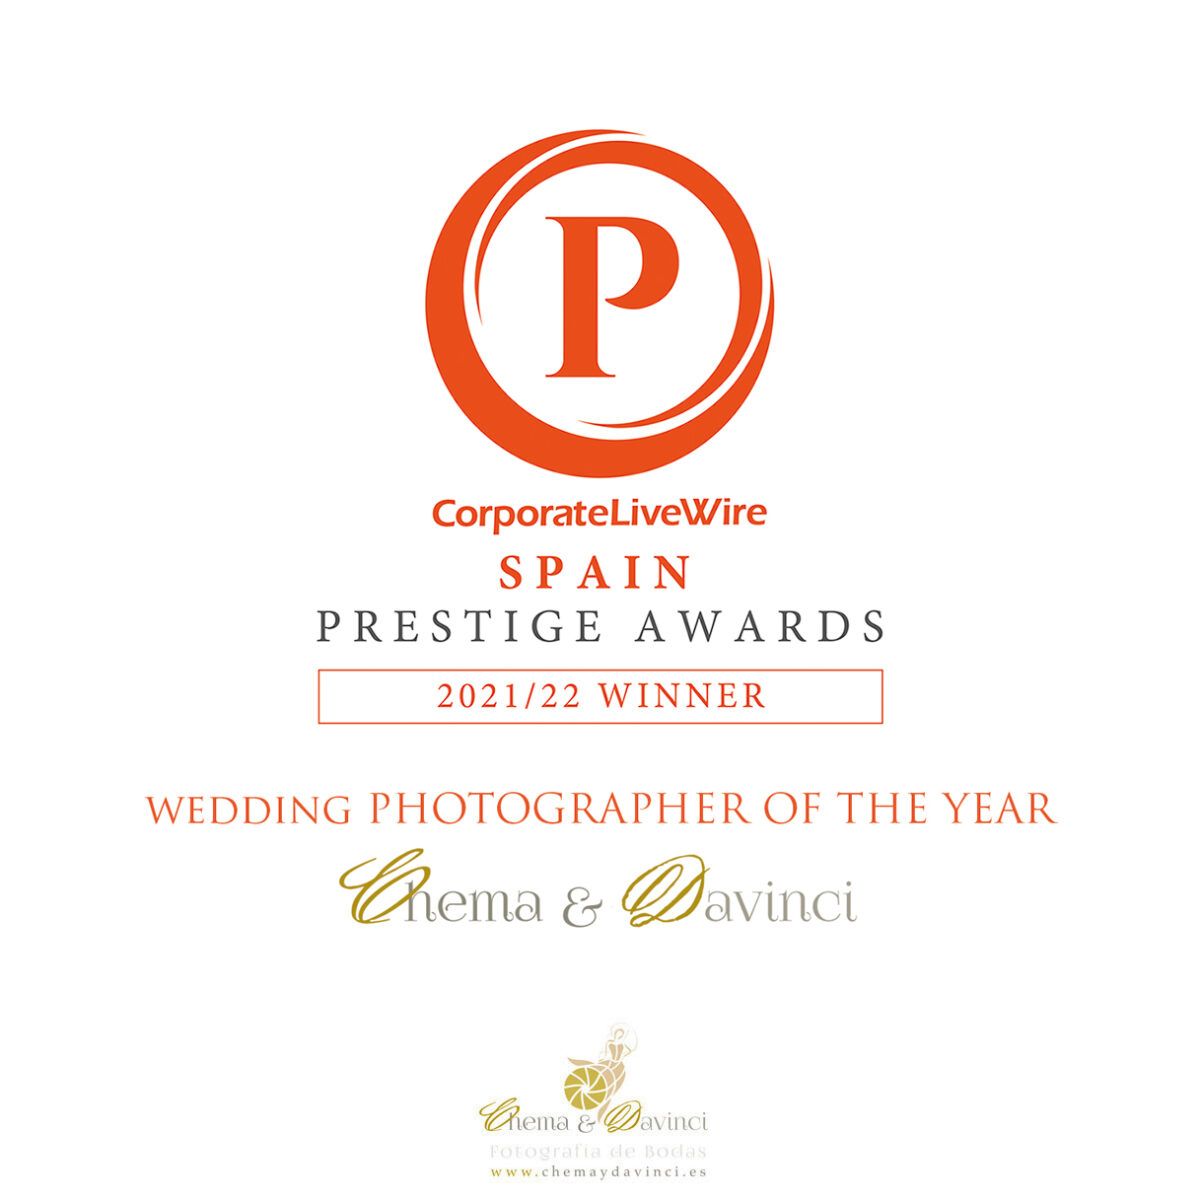 Chema & Davinci Mejor Fotógrafo del Año 2021-2022prestige-award-wedding-photographer-chemaydavinci-22 España en los Prestige Awards.